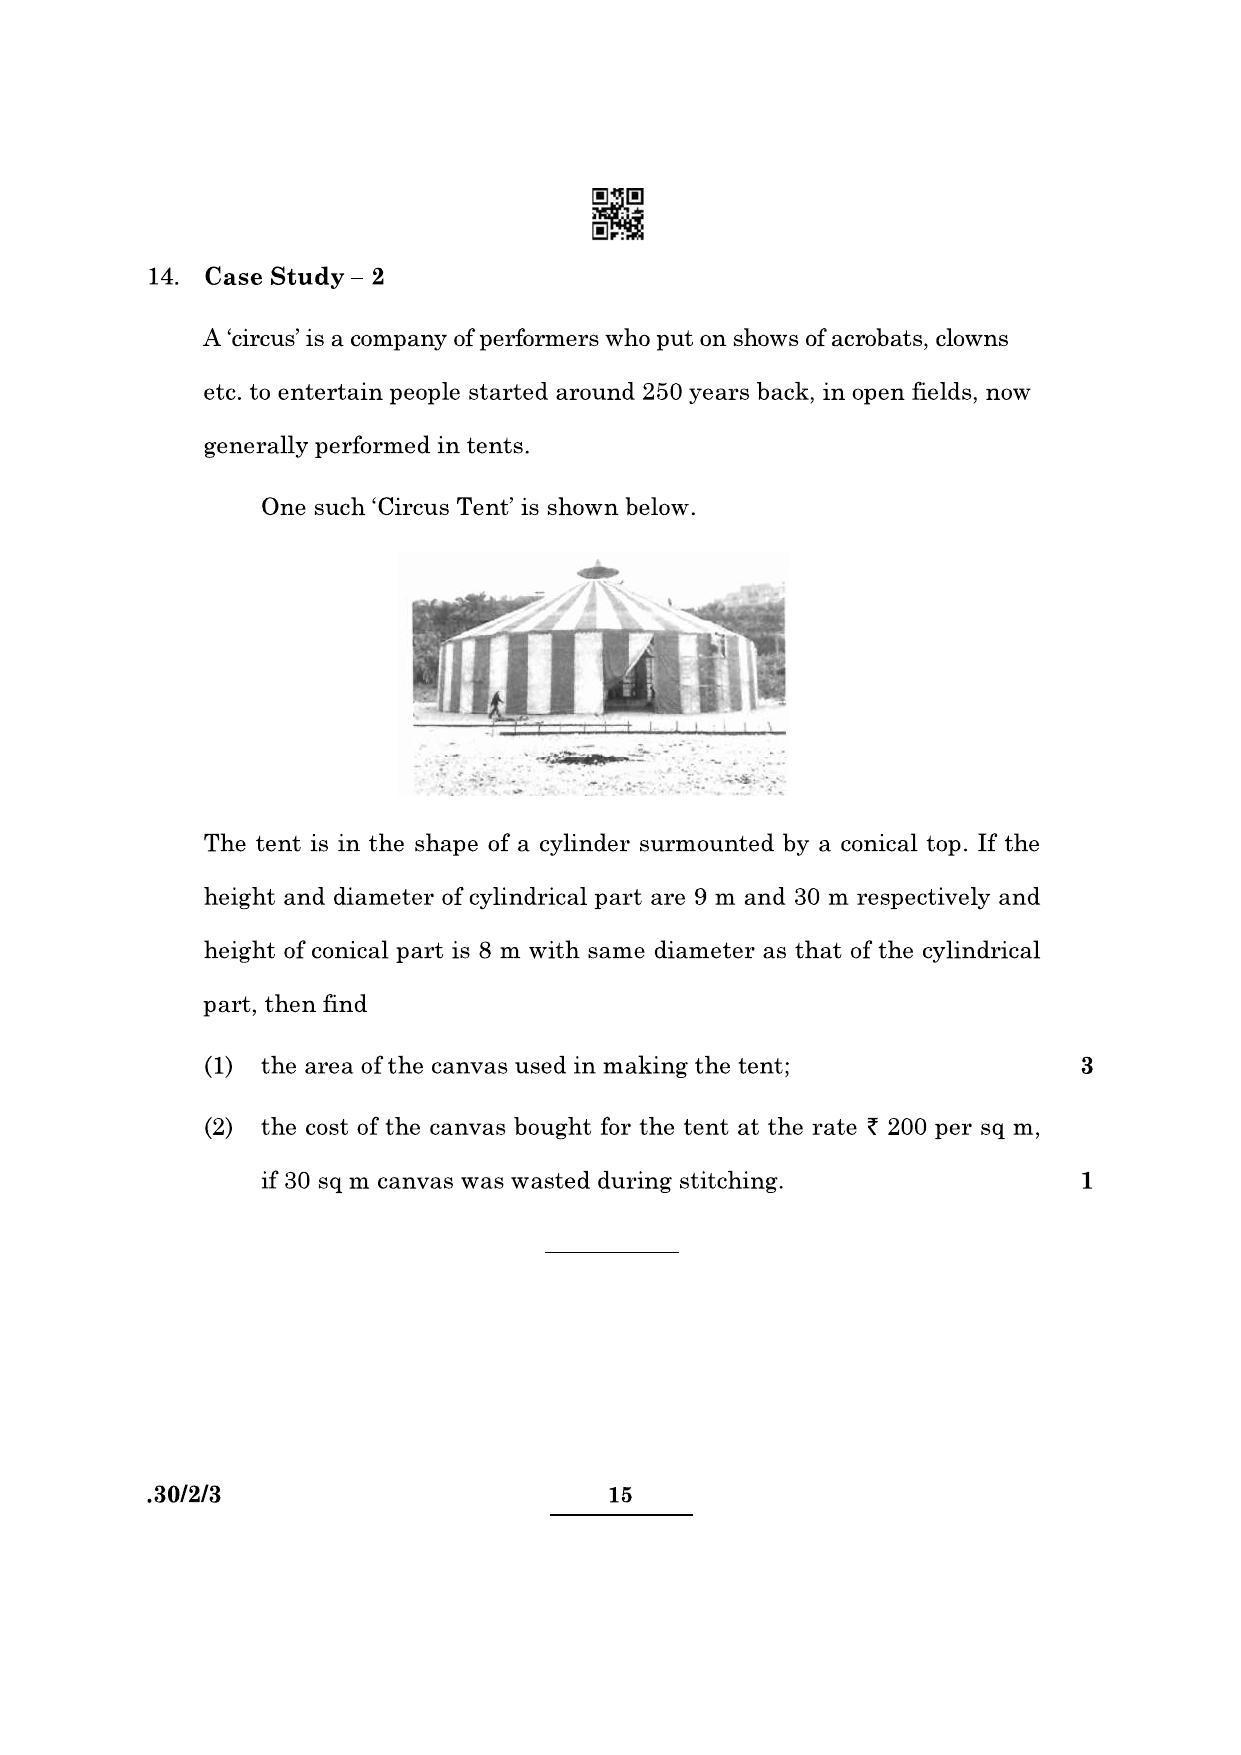 CBSE Class 10 Maths (30/2/3 - SET III) 2022 Question Paper - Page 15